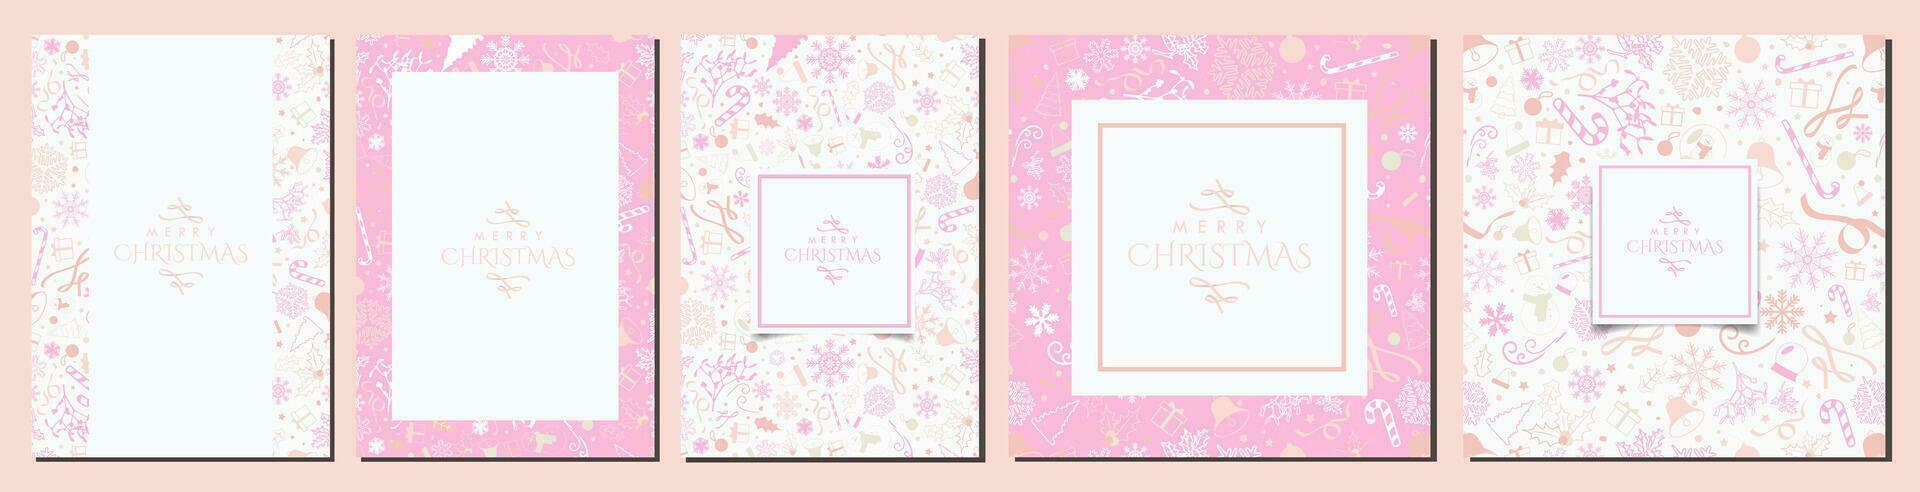 conjunto de blanco y rosado pastel Navidad antecedentes diseños hermosa blanco Navidad plantillas con Navidad elementos en rosa, amarillo, durazno, magenta. a4 carteles, saludo tarjetas, pancartas vector Arte.